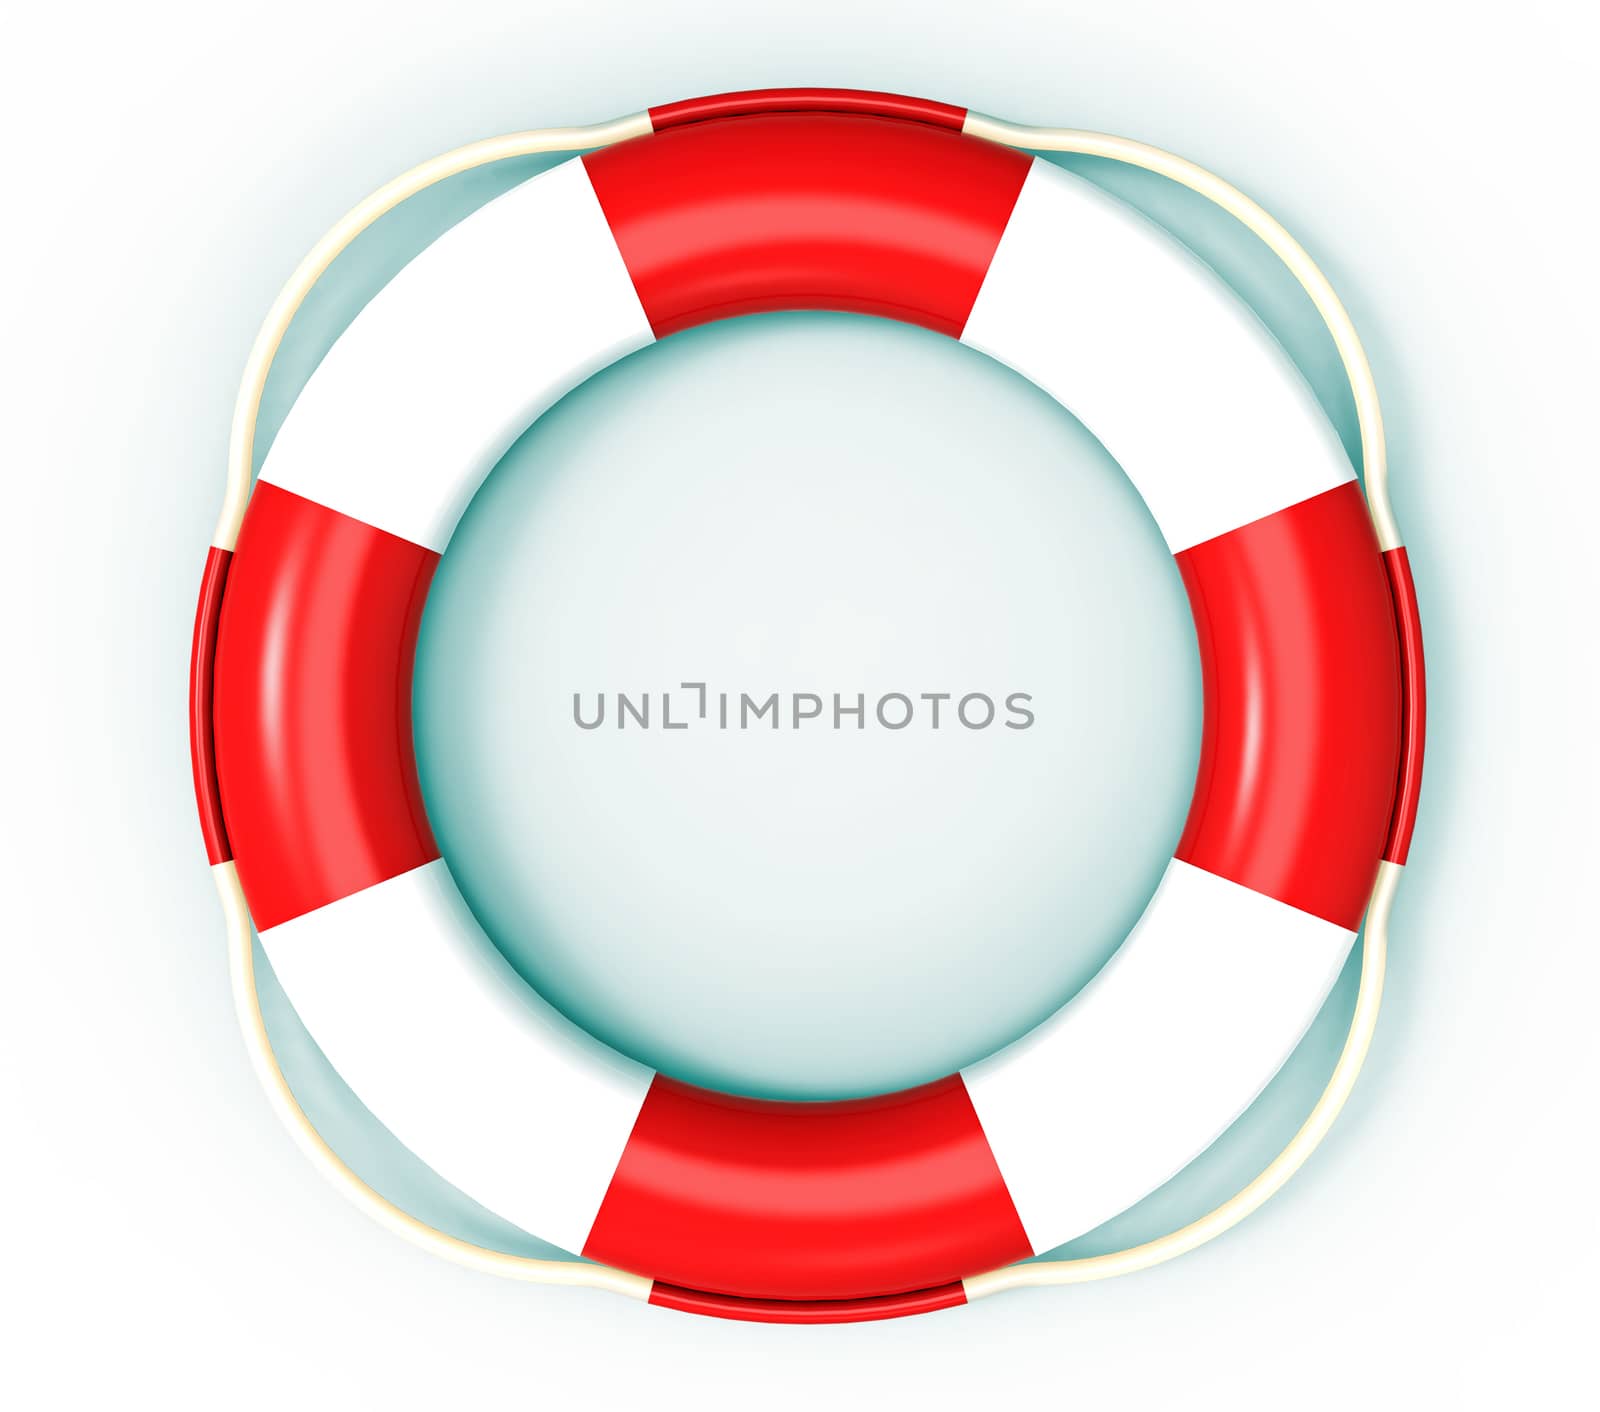 Lifebuoy, life saving buoy, 3D render, isolated on white